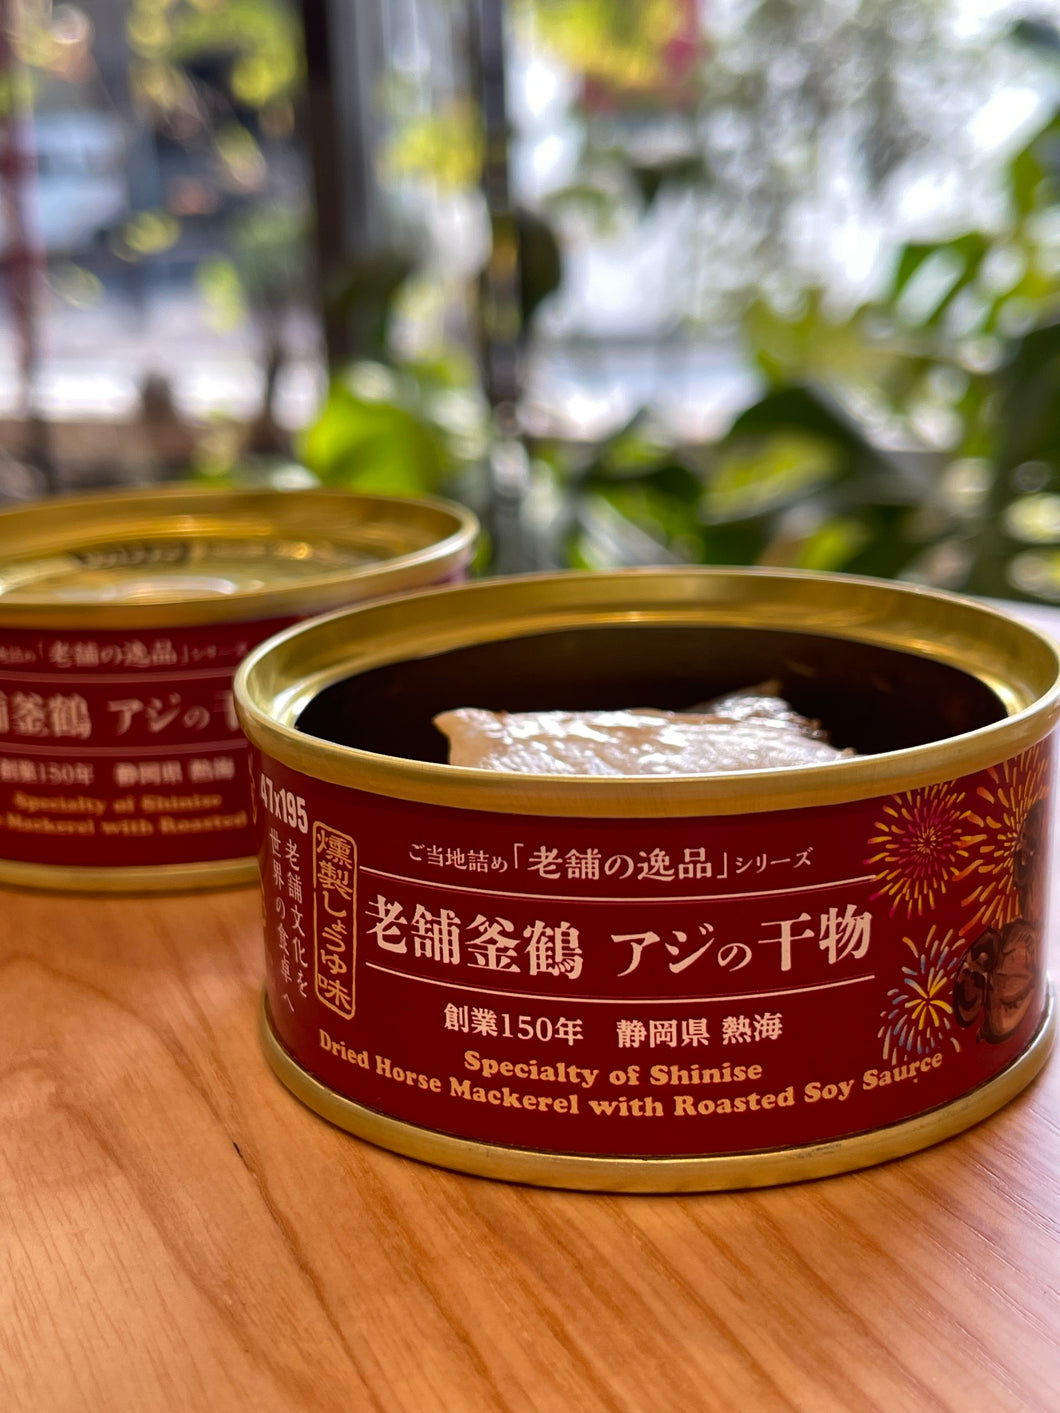 ITOKASHI 老舗釜鶴 アジの干物 燻製しょうゆ味